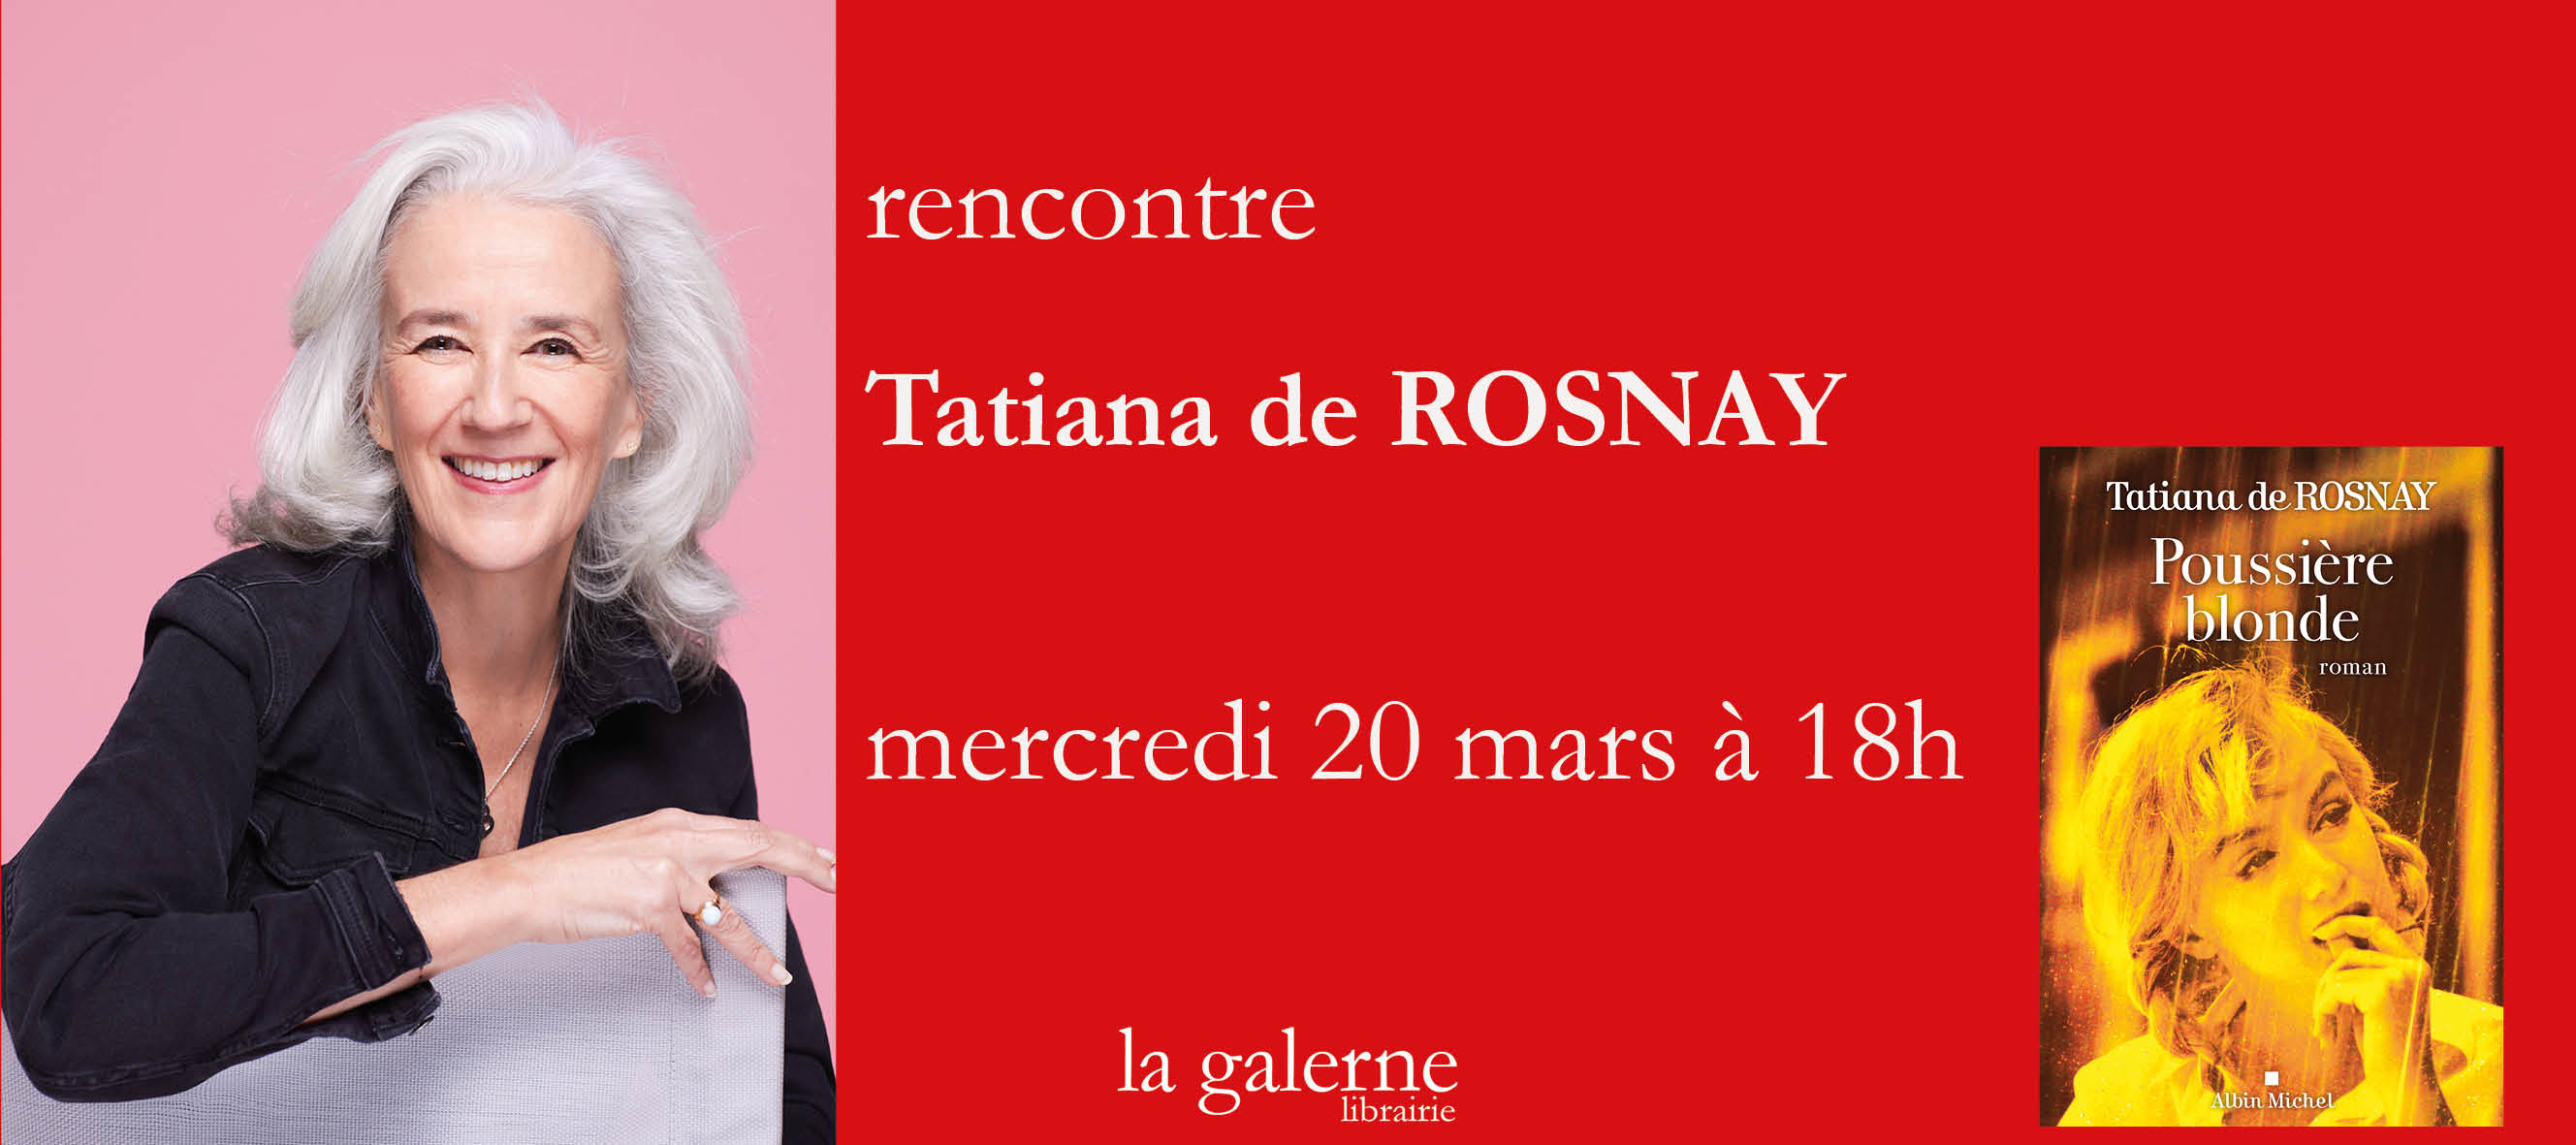 rencontre Tatiana de Rosnay